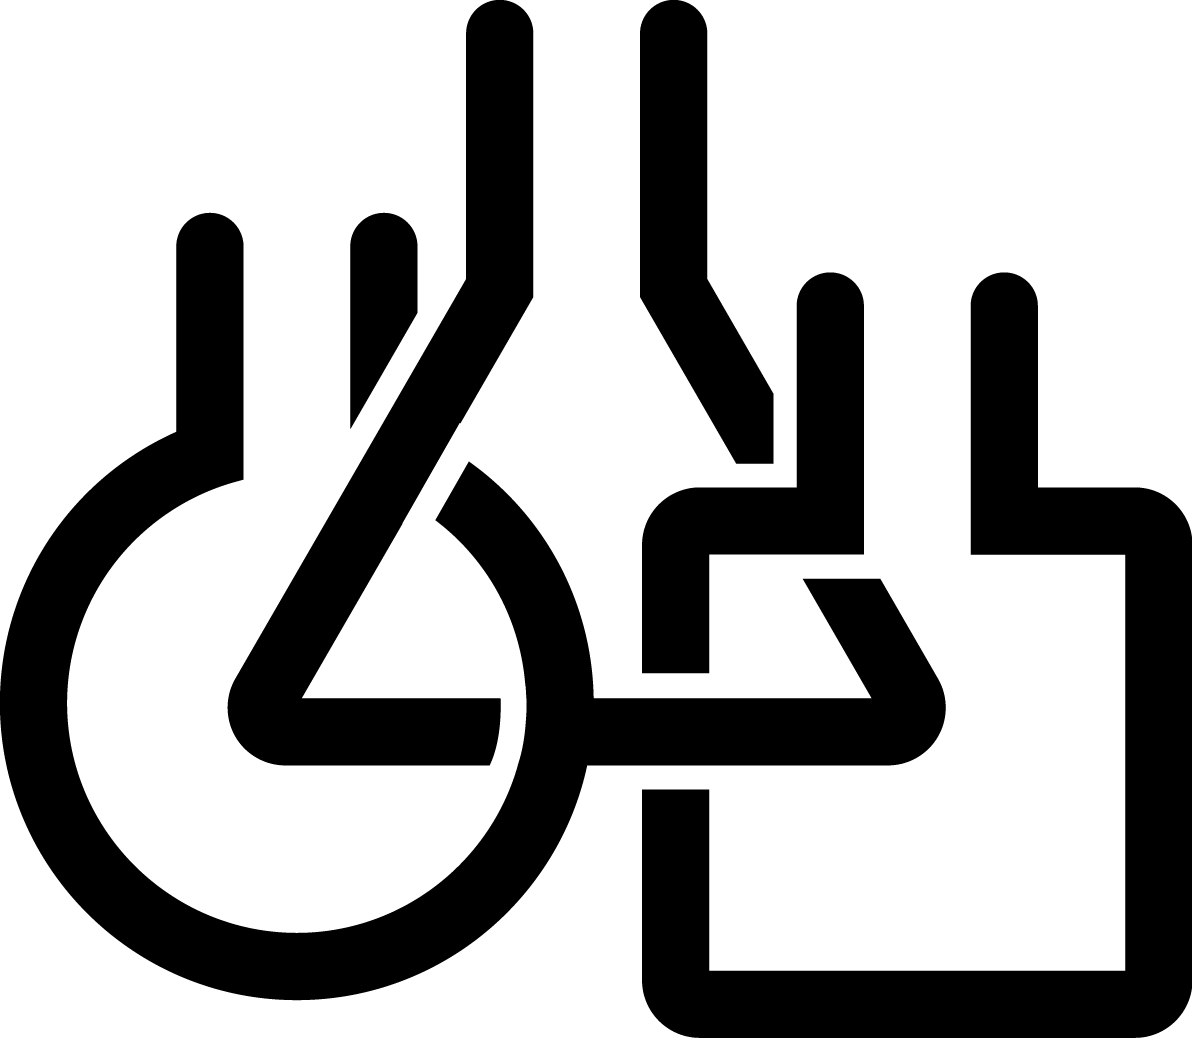 CTF beaker icons in black